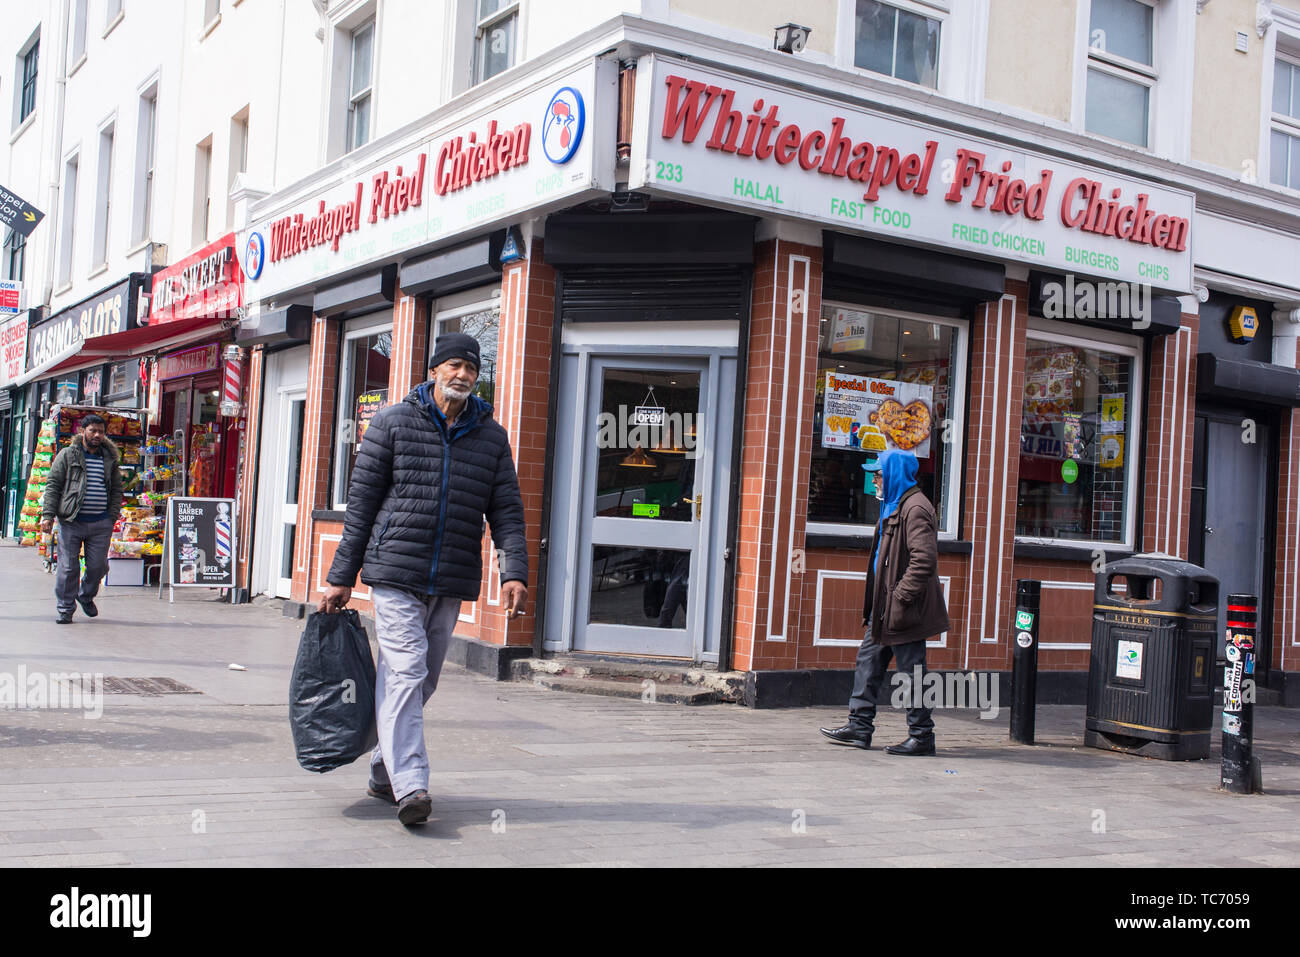 Whitechapel, London, England, UK - April 2019: Whitechapel Fried Chicken Shop mit Menschen zu Fuß in fornt auf der Whitechapel Road, Shadwell, London Stockfoto